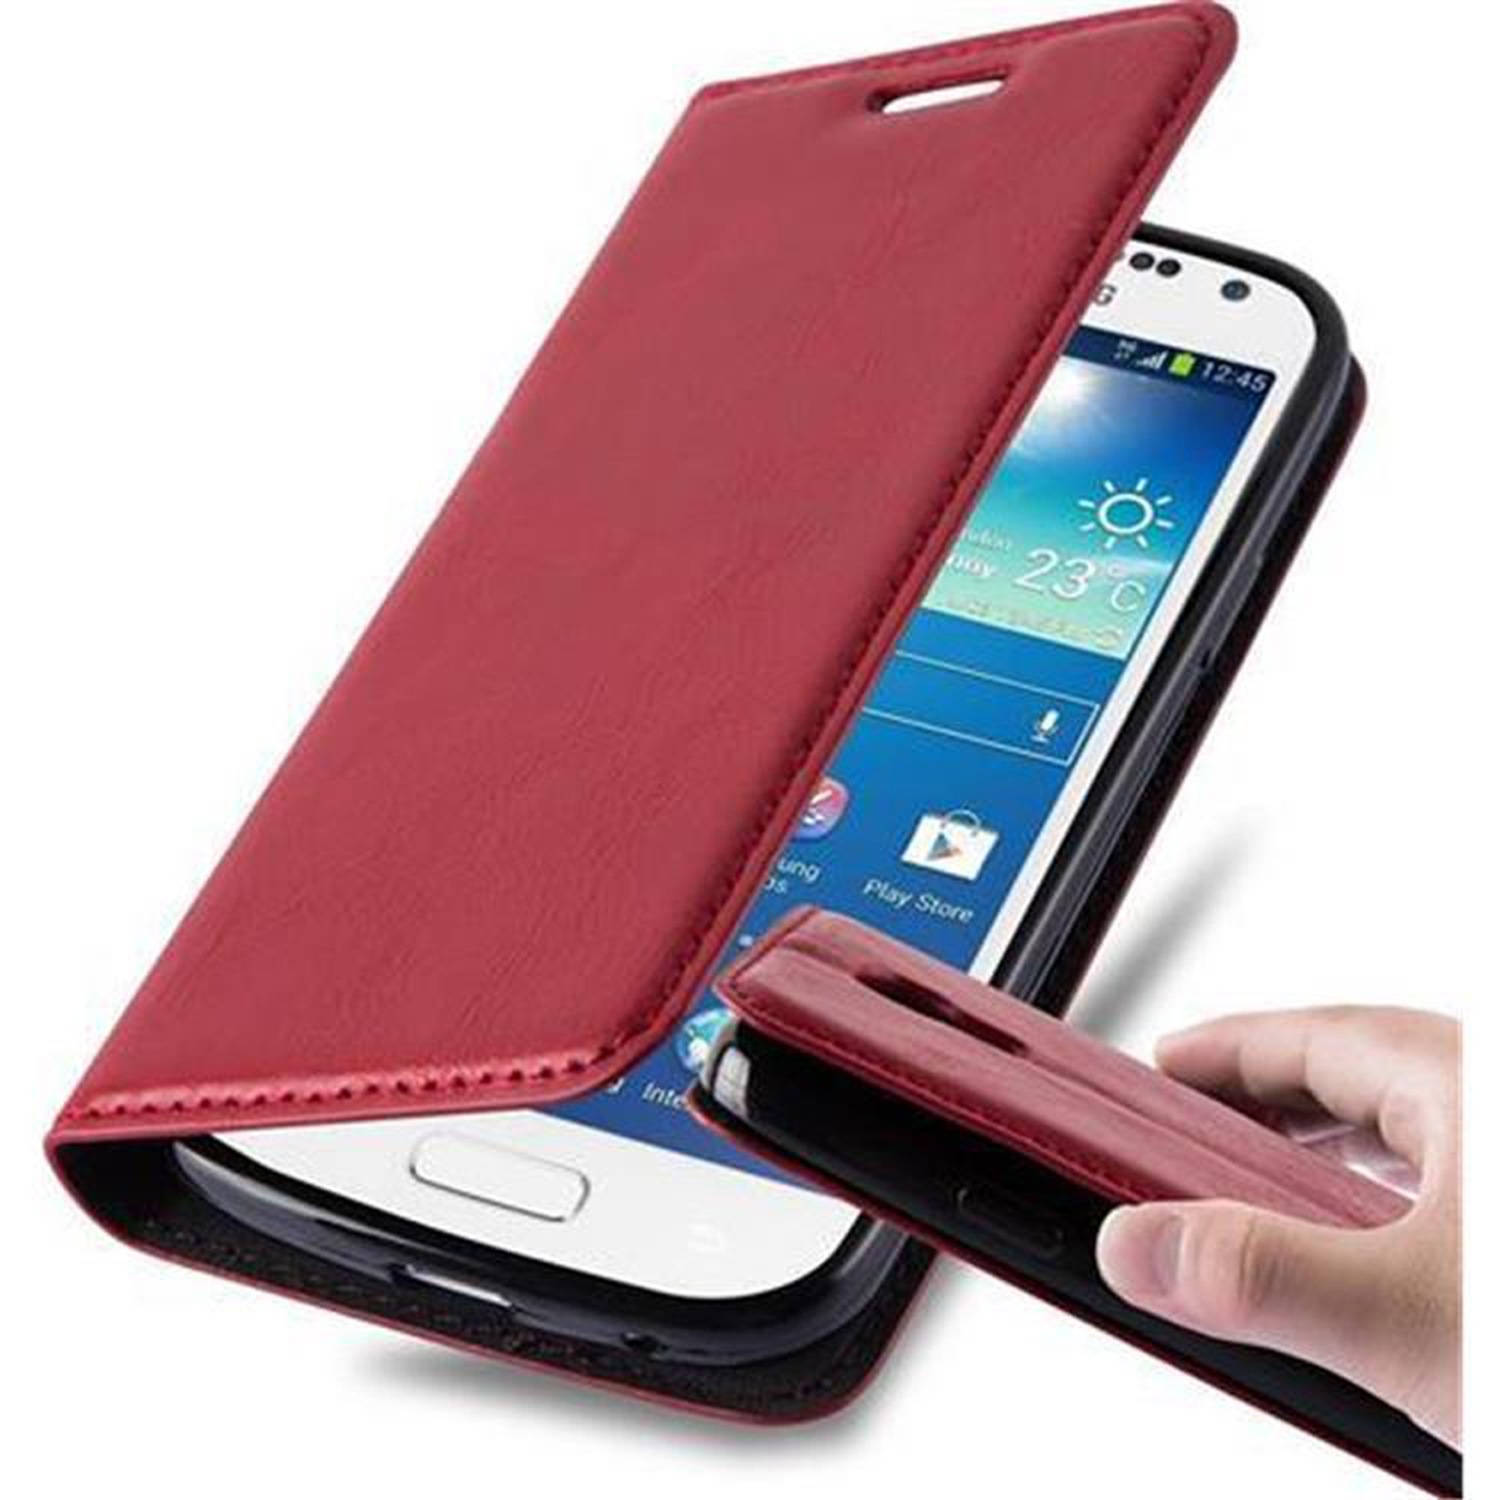 Cadorabo Hoesje voor Samsung Galaxy S4 MINI in APPEL ROOD - Beschermend etui met magnetische sluiting